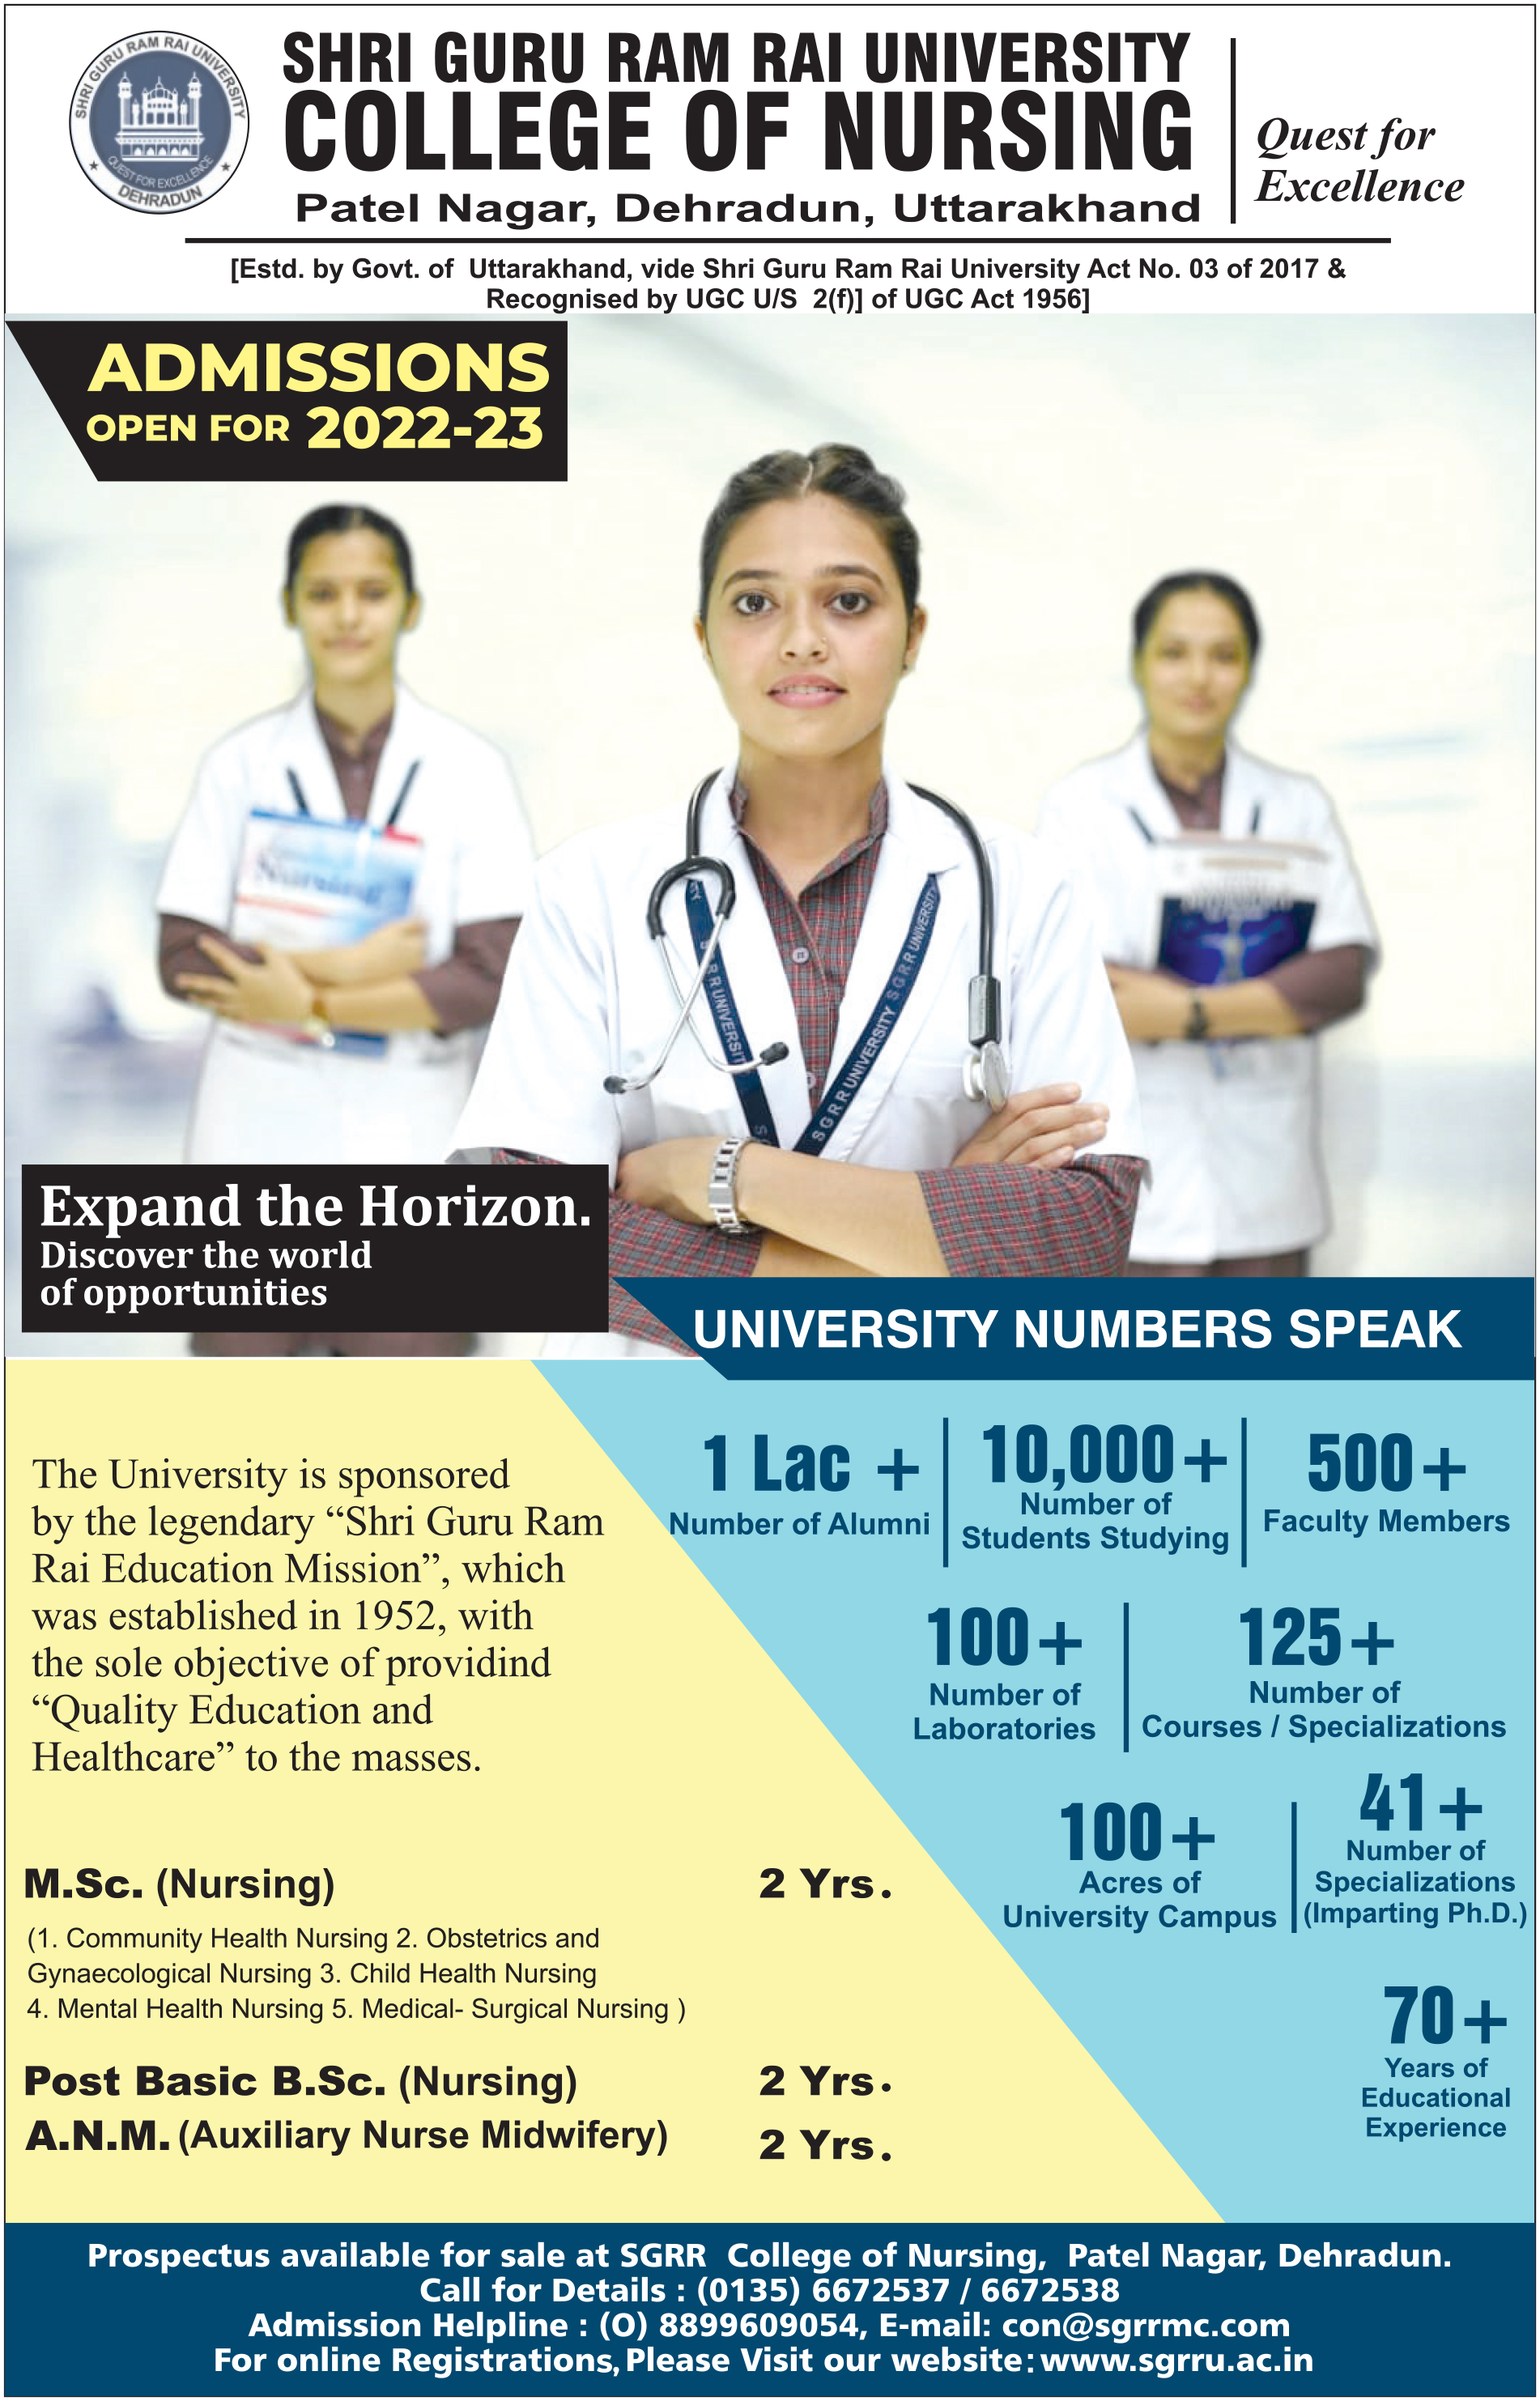 SGRRU-Nursing-Admission-2022